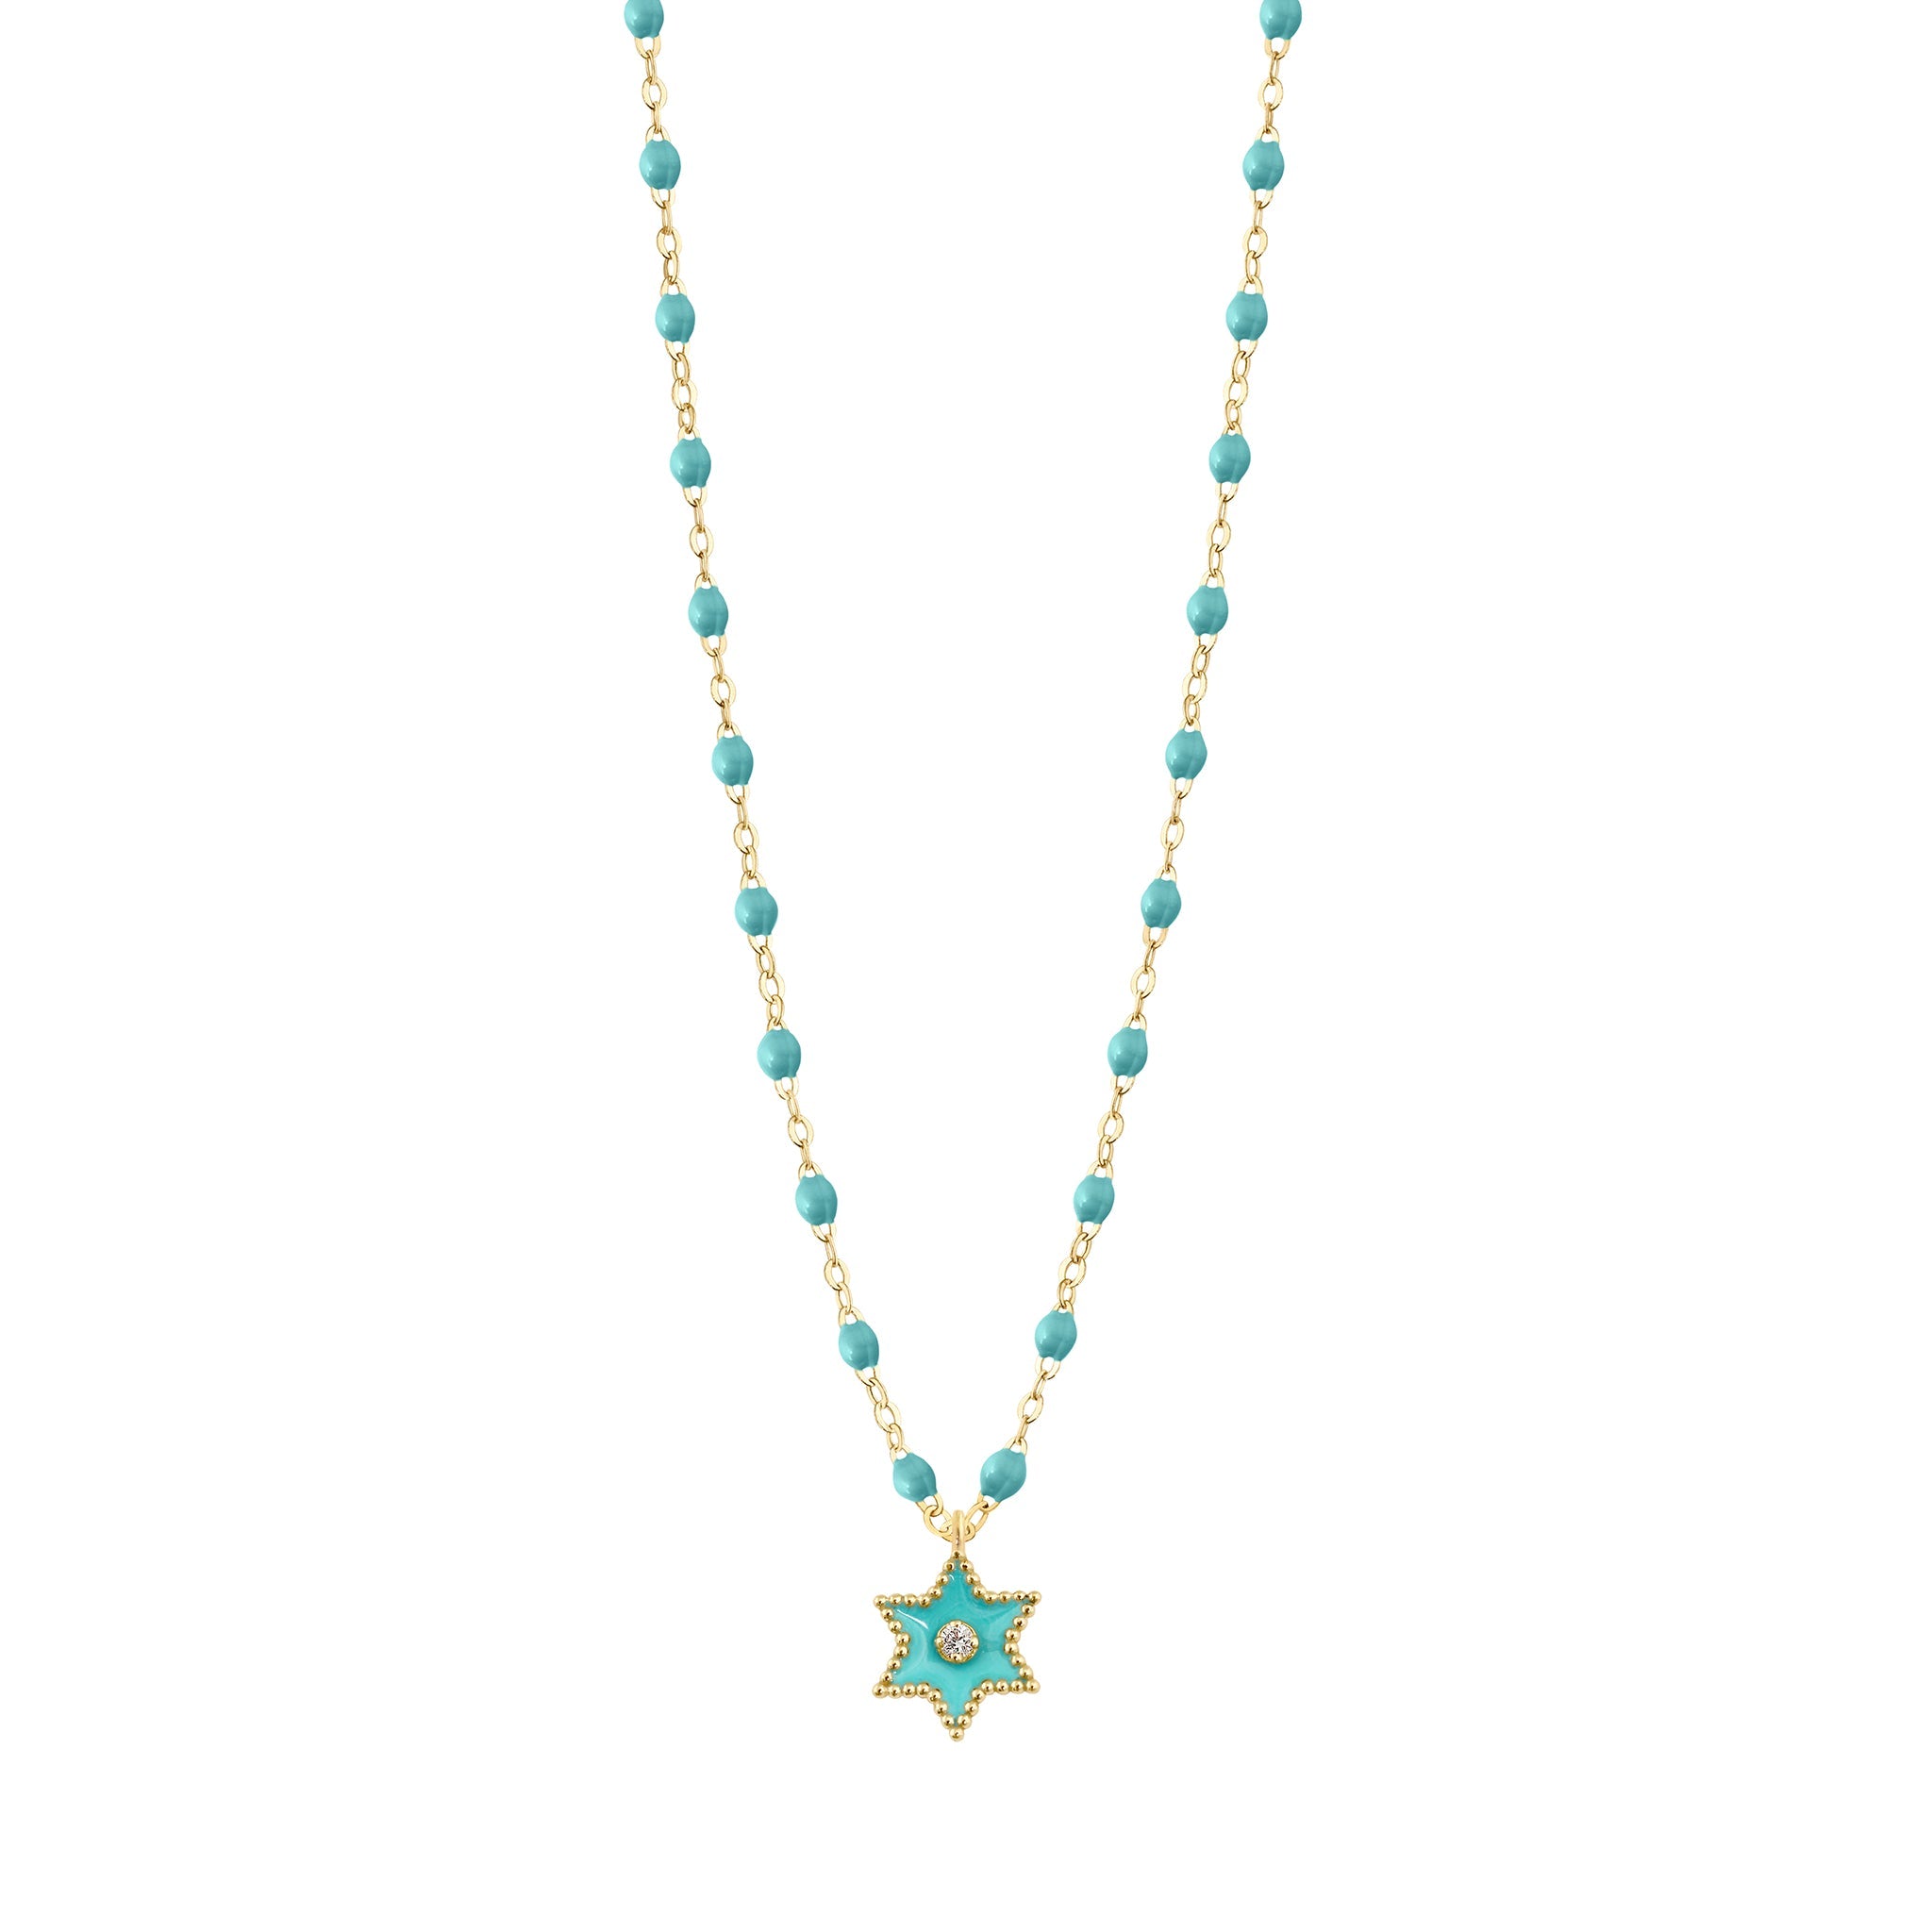 Gigi Clozeau - Étoile Diamond Necklace, Turquoise Green, Yellow Gold, 16.5"